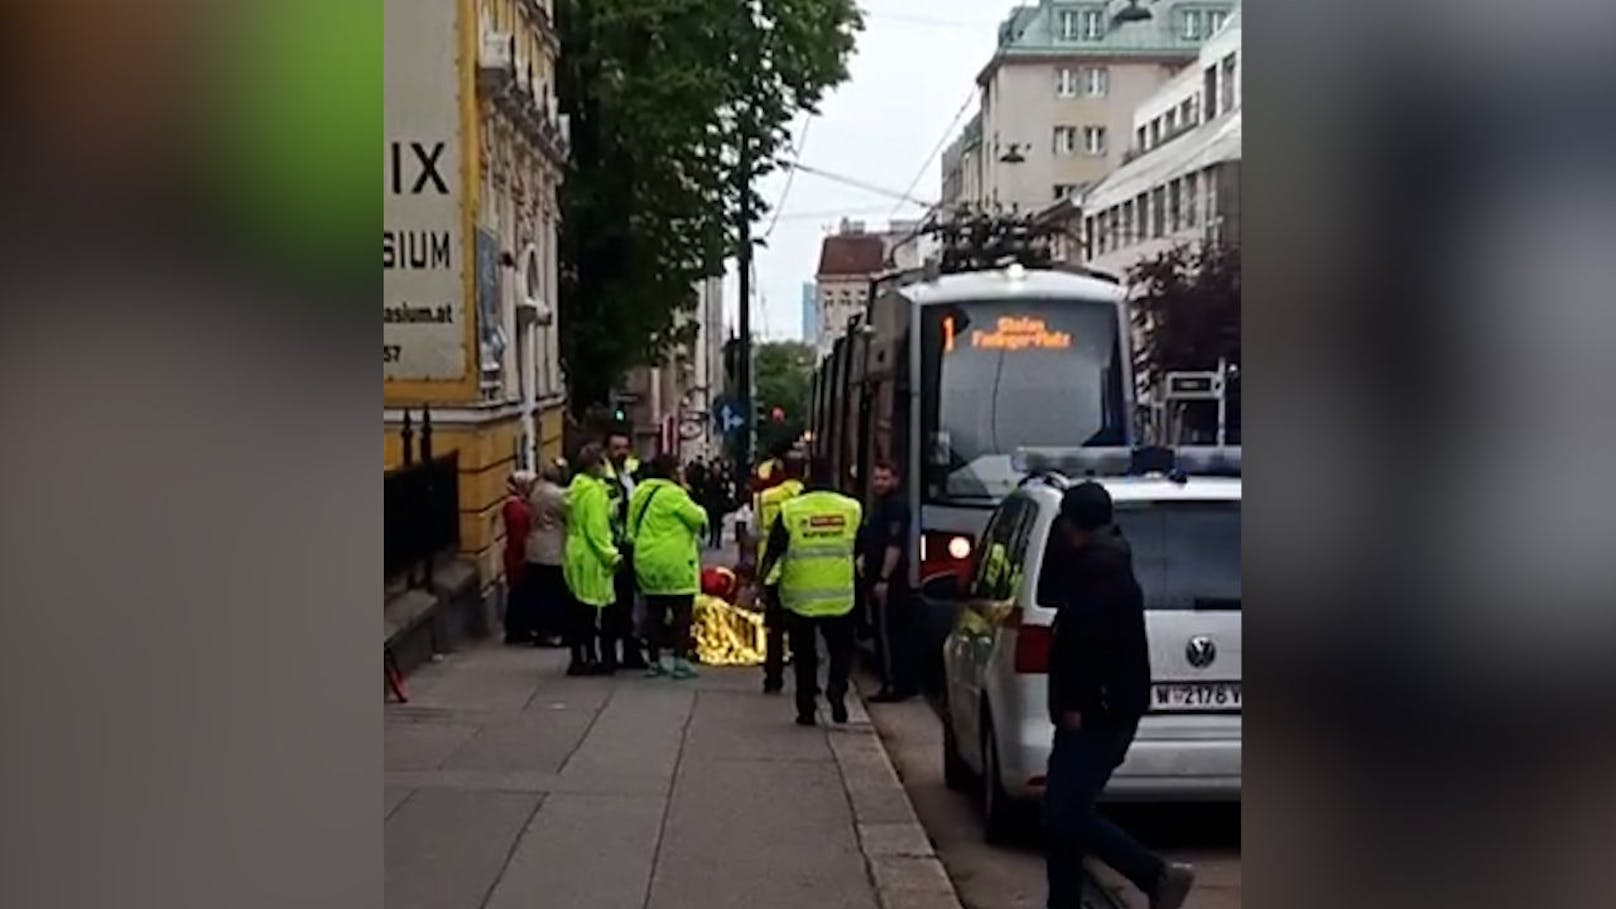 Mäderl (12) in Wien von Bim erfasst – schwer verletzt